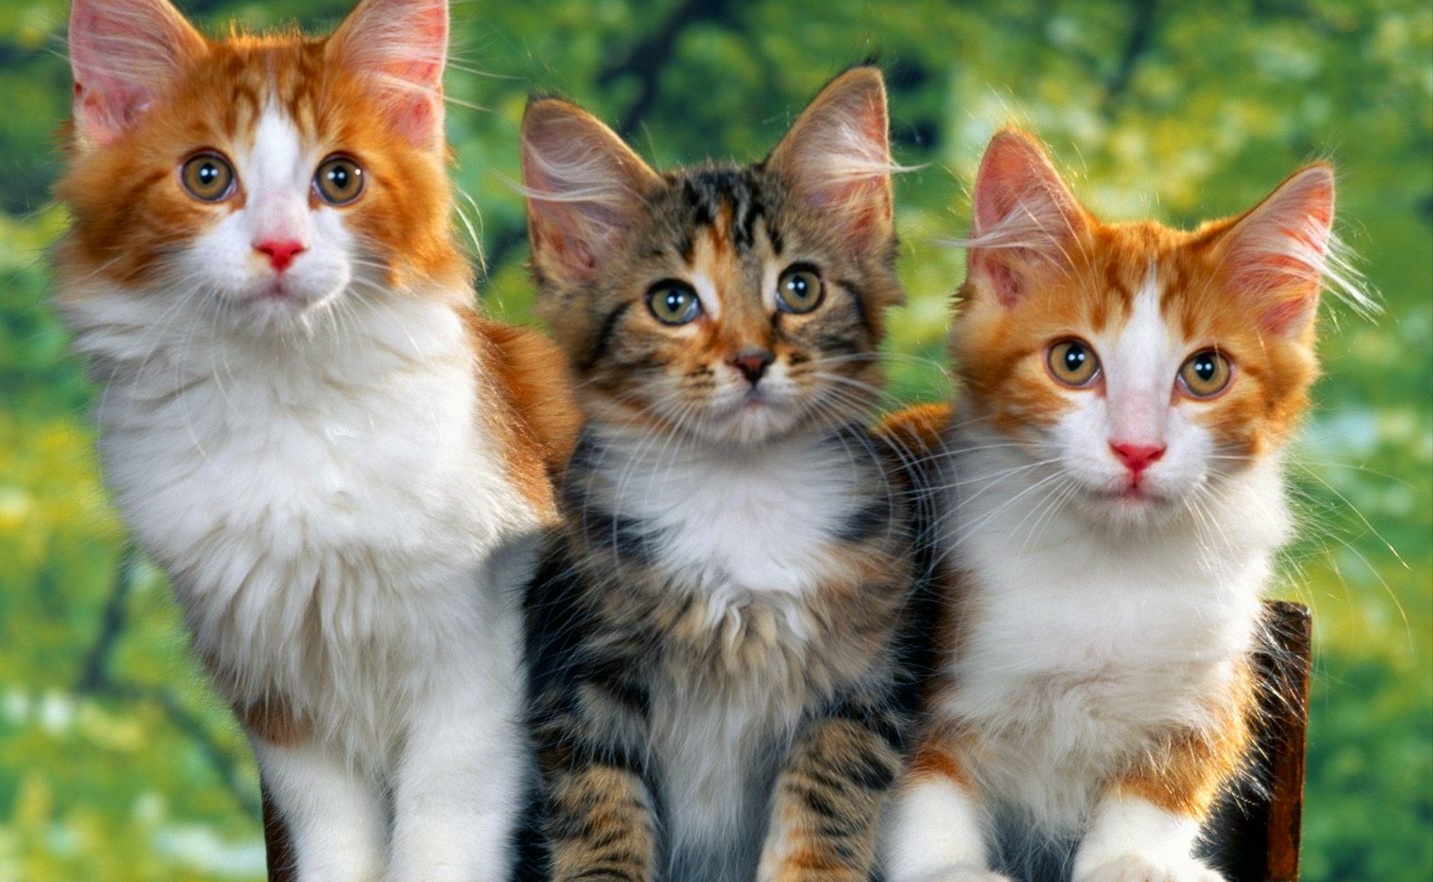 Kumpulan Gambar Kucing Imut dan Lucu - KUMPUGAS